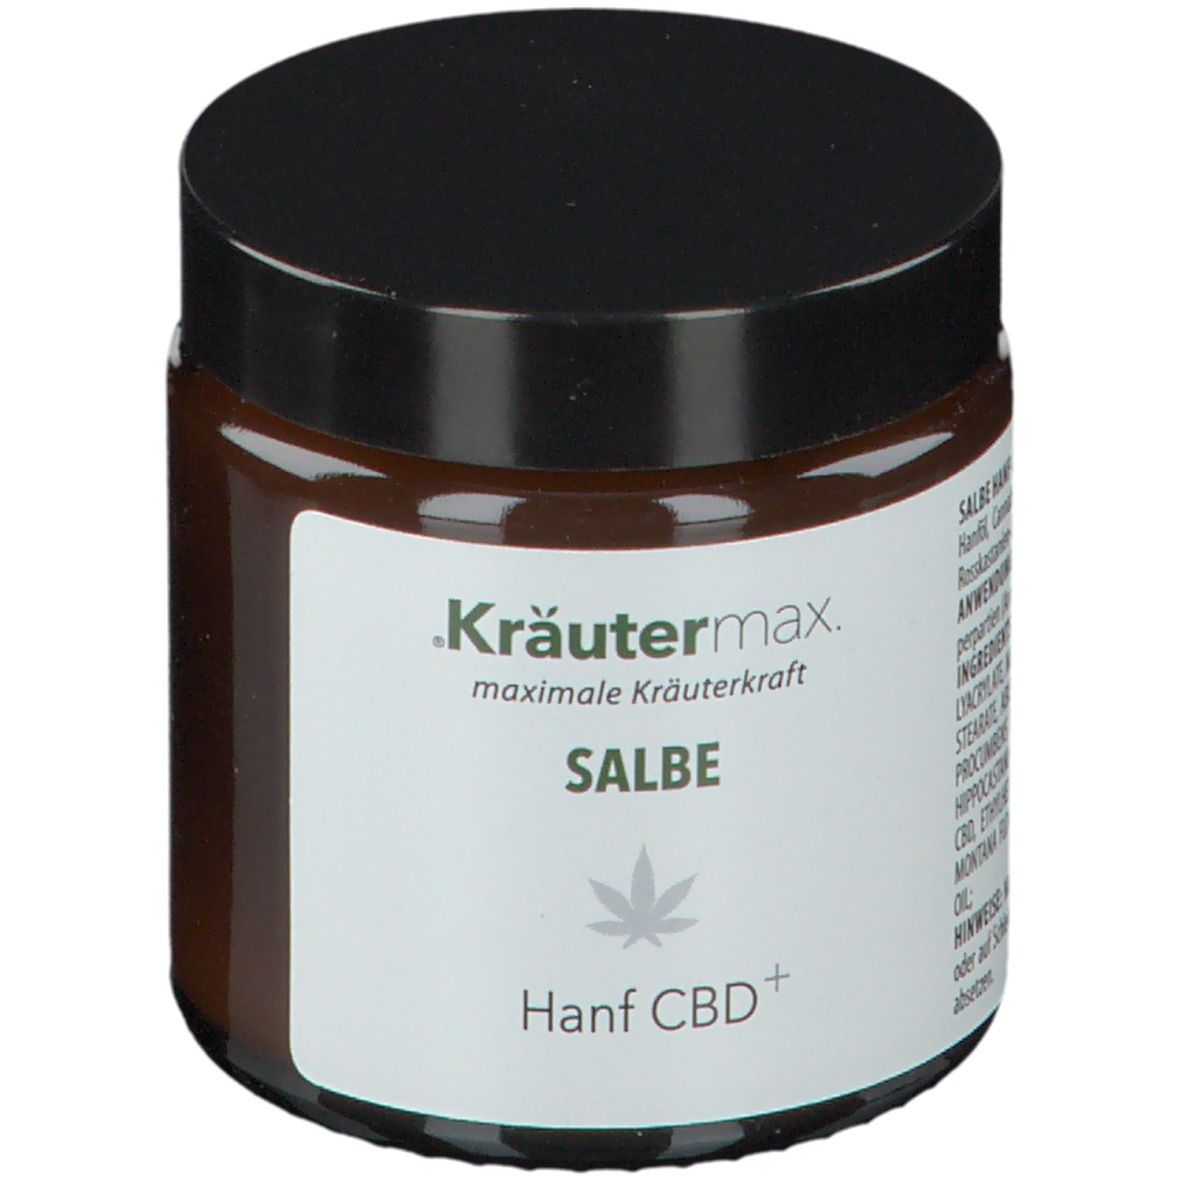 KRAEUTERMAX GMBH & CO KG Kräutermax® Hanf Cbd+ Salbe